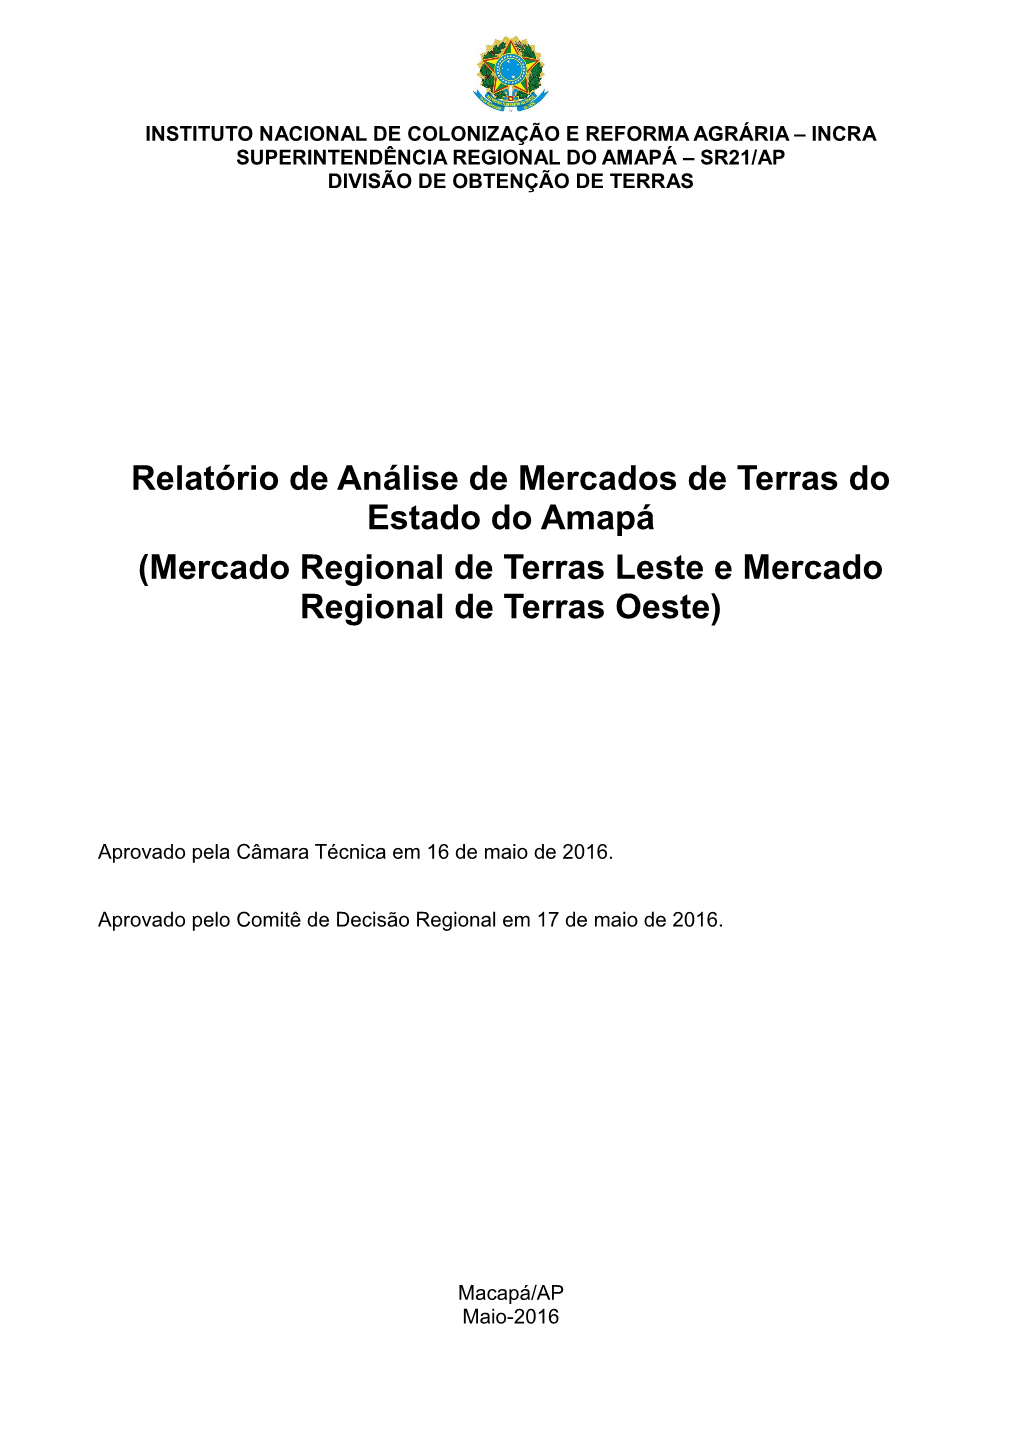 Relatório De Análise De Mercados De Terras Do Estado Do Amapá (Mercado Regional De Terras Leste E Mercado Regional De Terras Oeste)